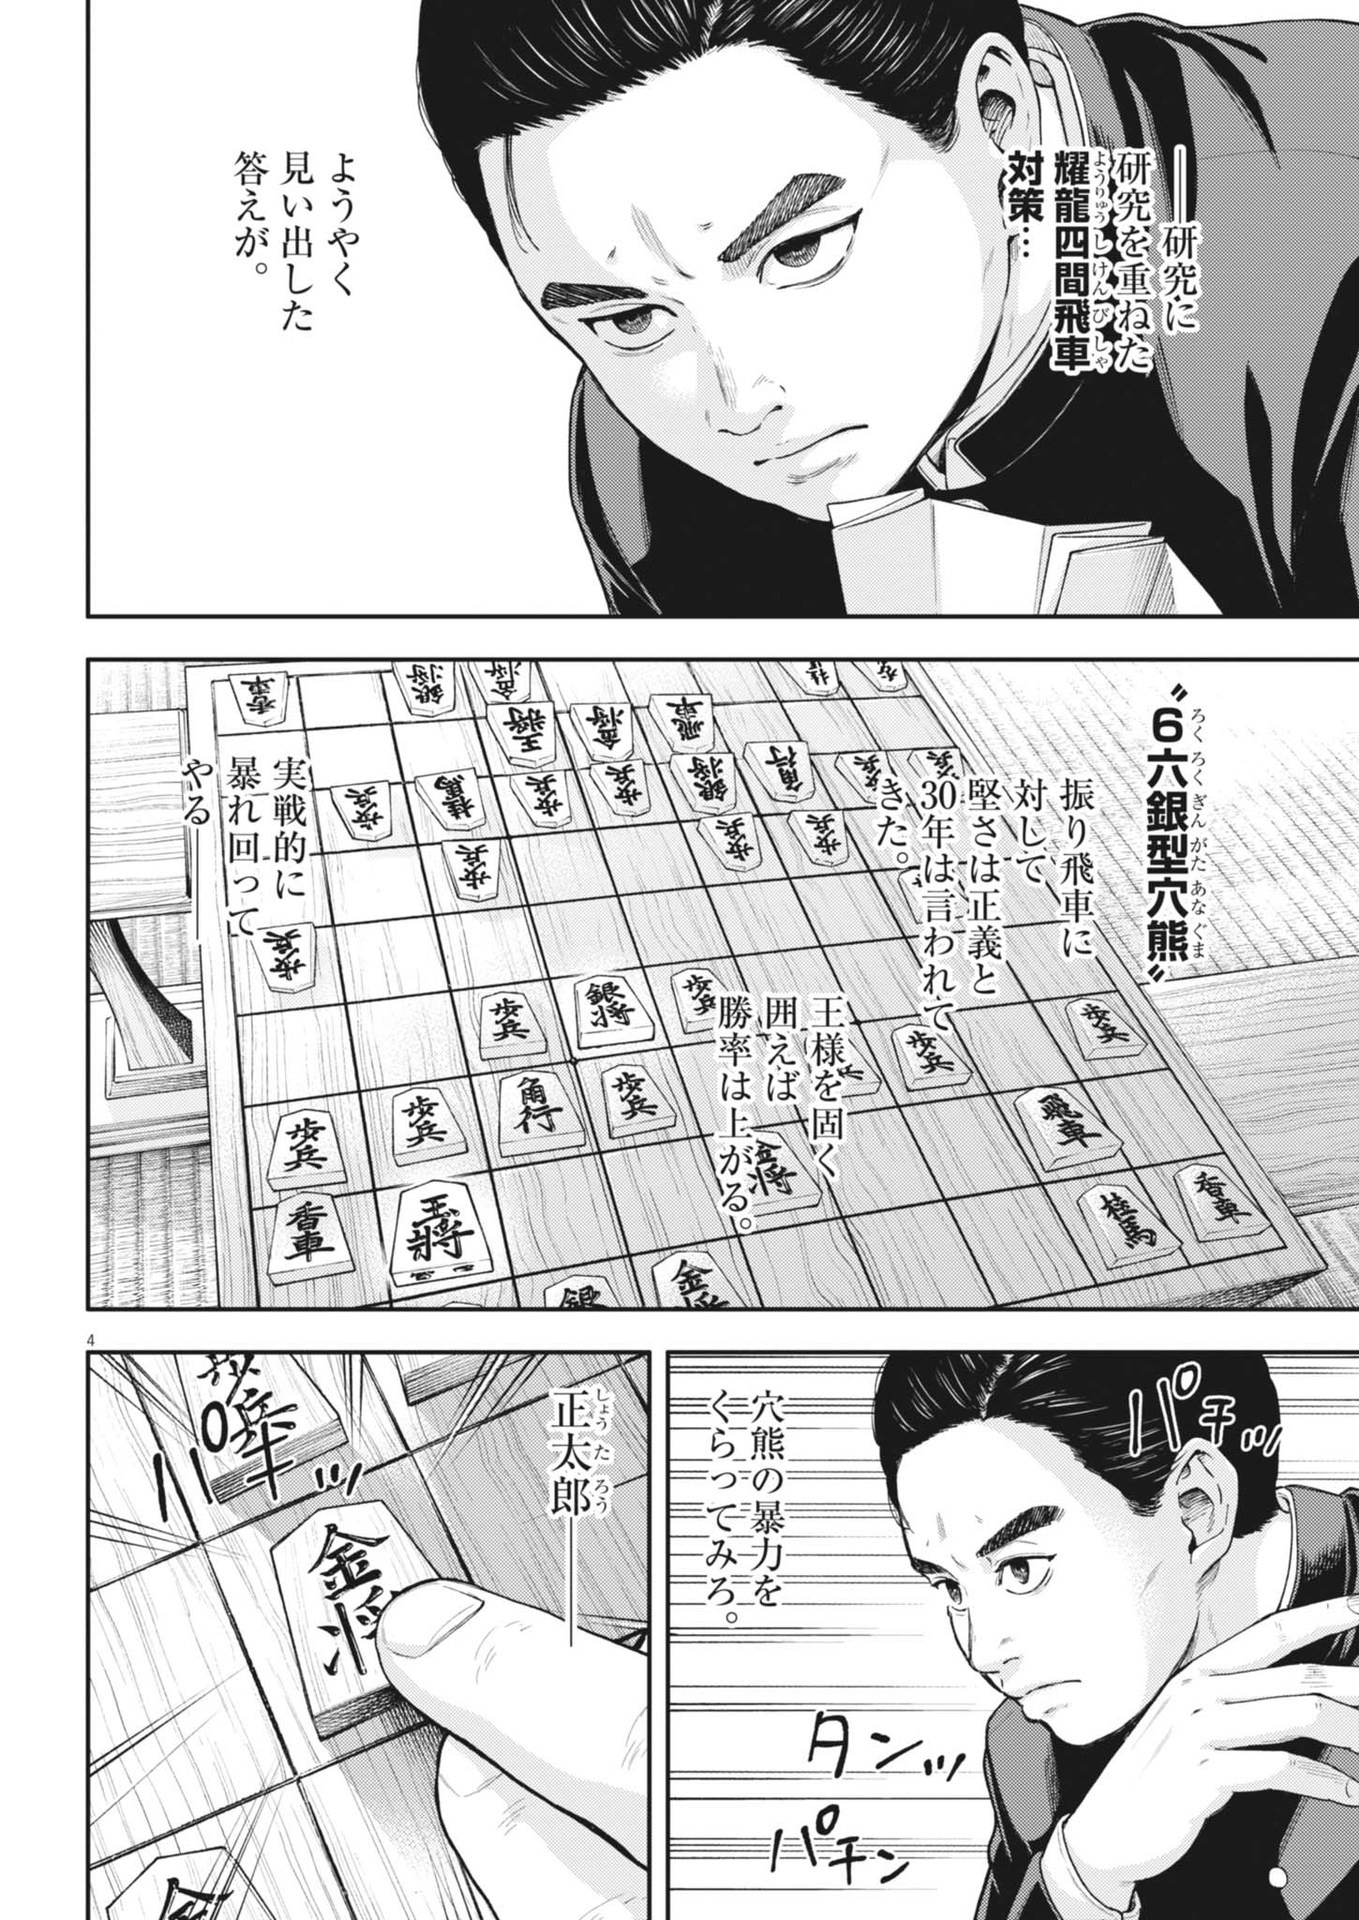 Yumenashi-sensei no Shinroshidou - Chapter 33 - Page 4